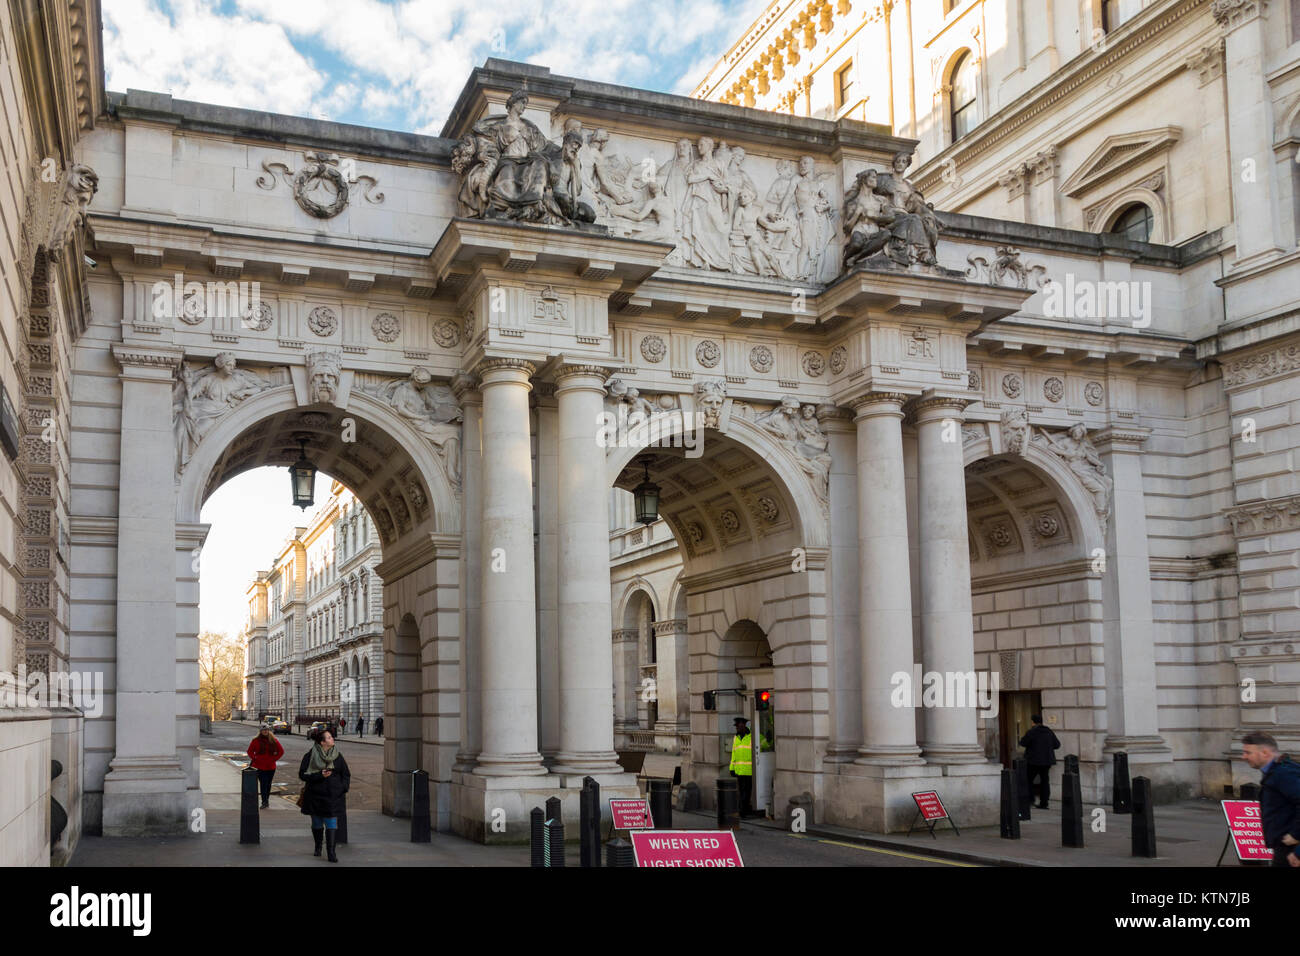 Arche au-dessus de King Charles Street par l'architecte J. M. Brydon avec des sculpteurs Paul Raphael Montford & William Silver Frith vu de Whitehall, Londres, UK Banque D'Images